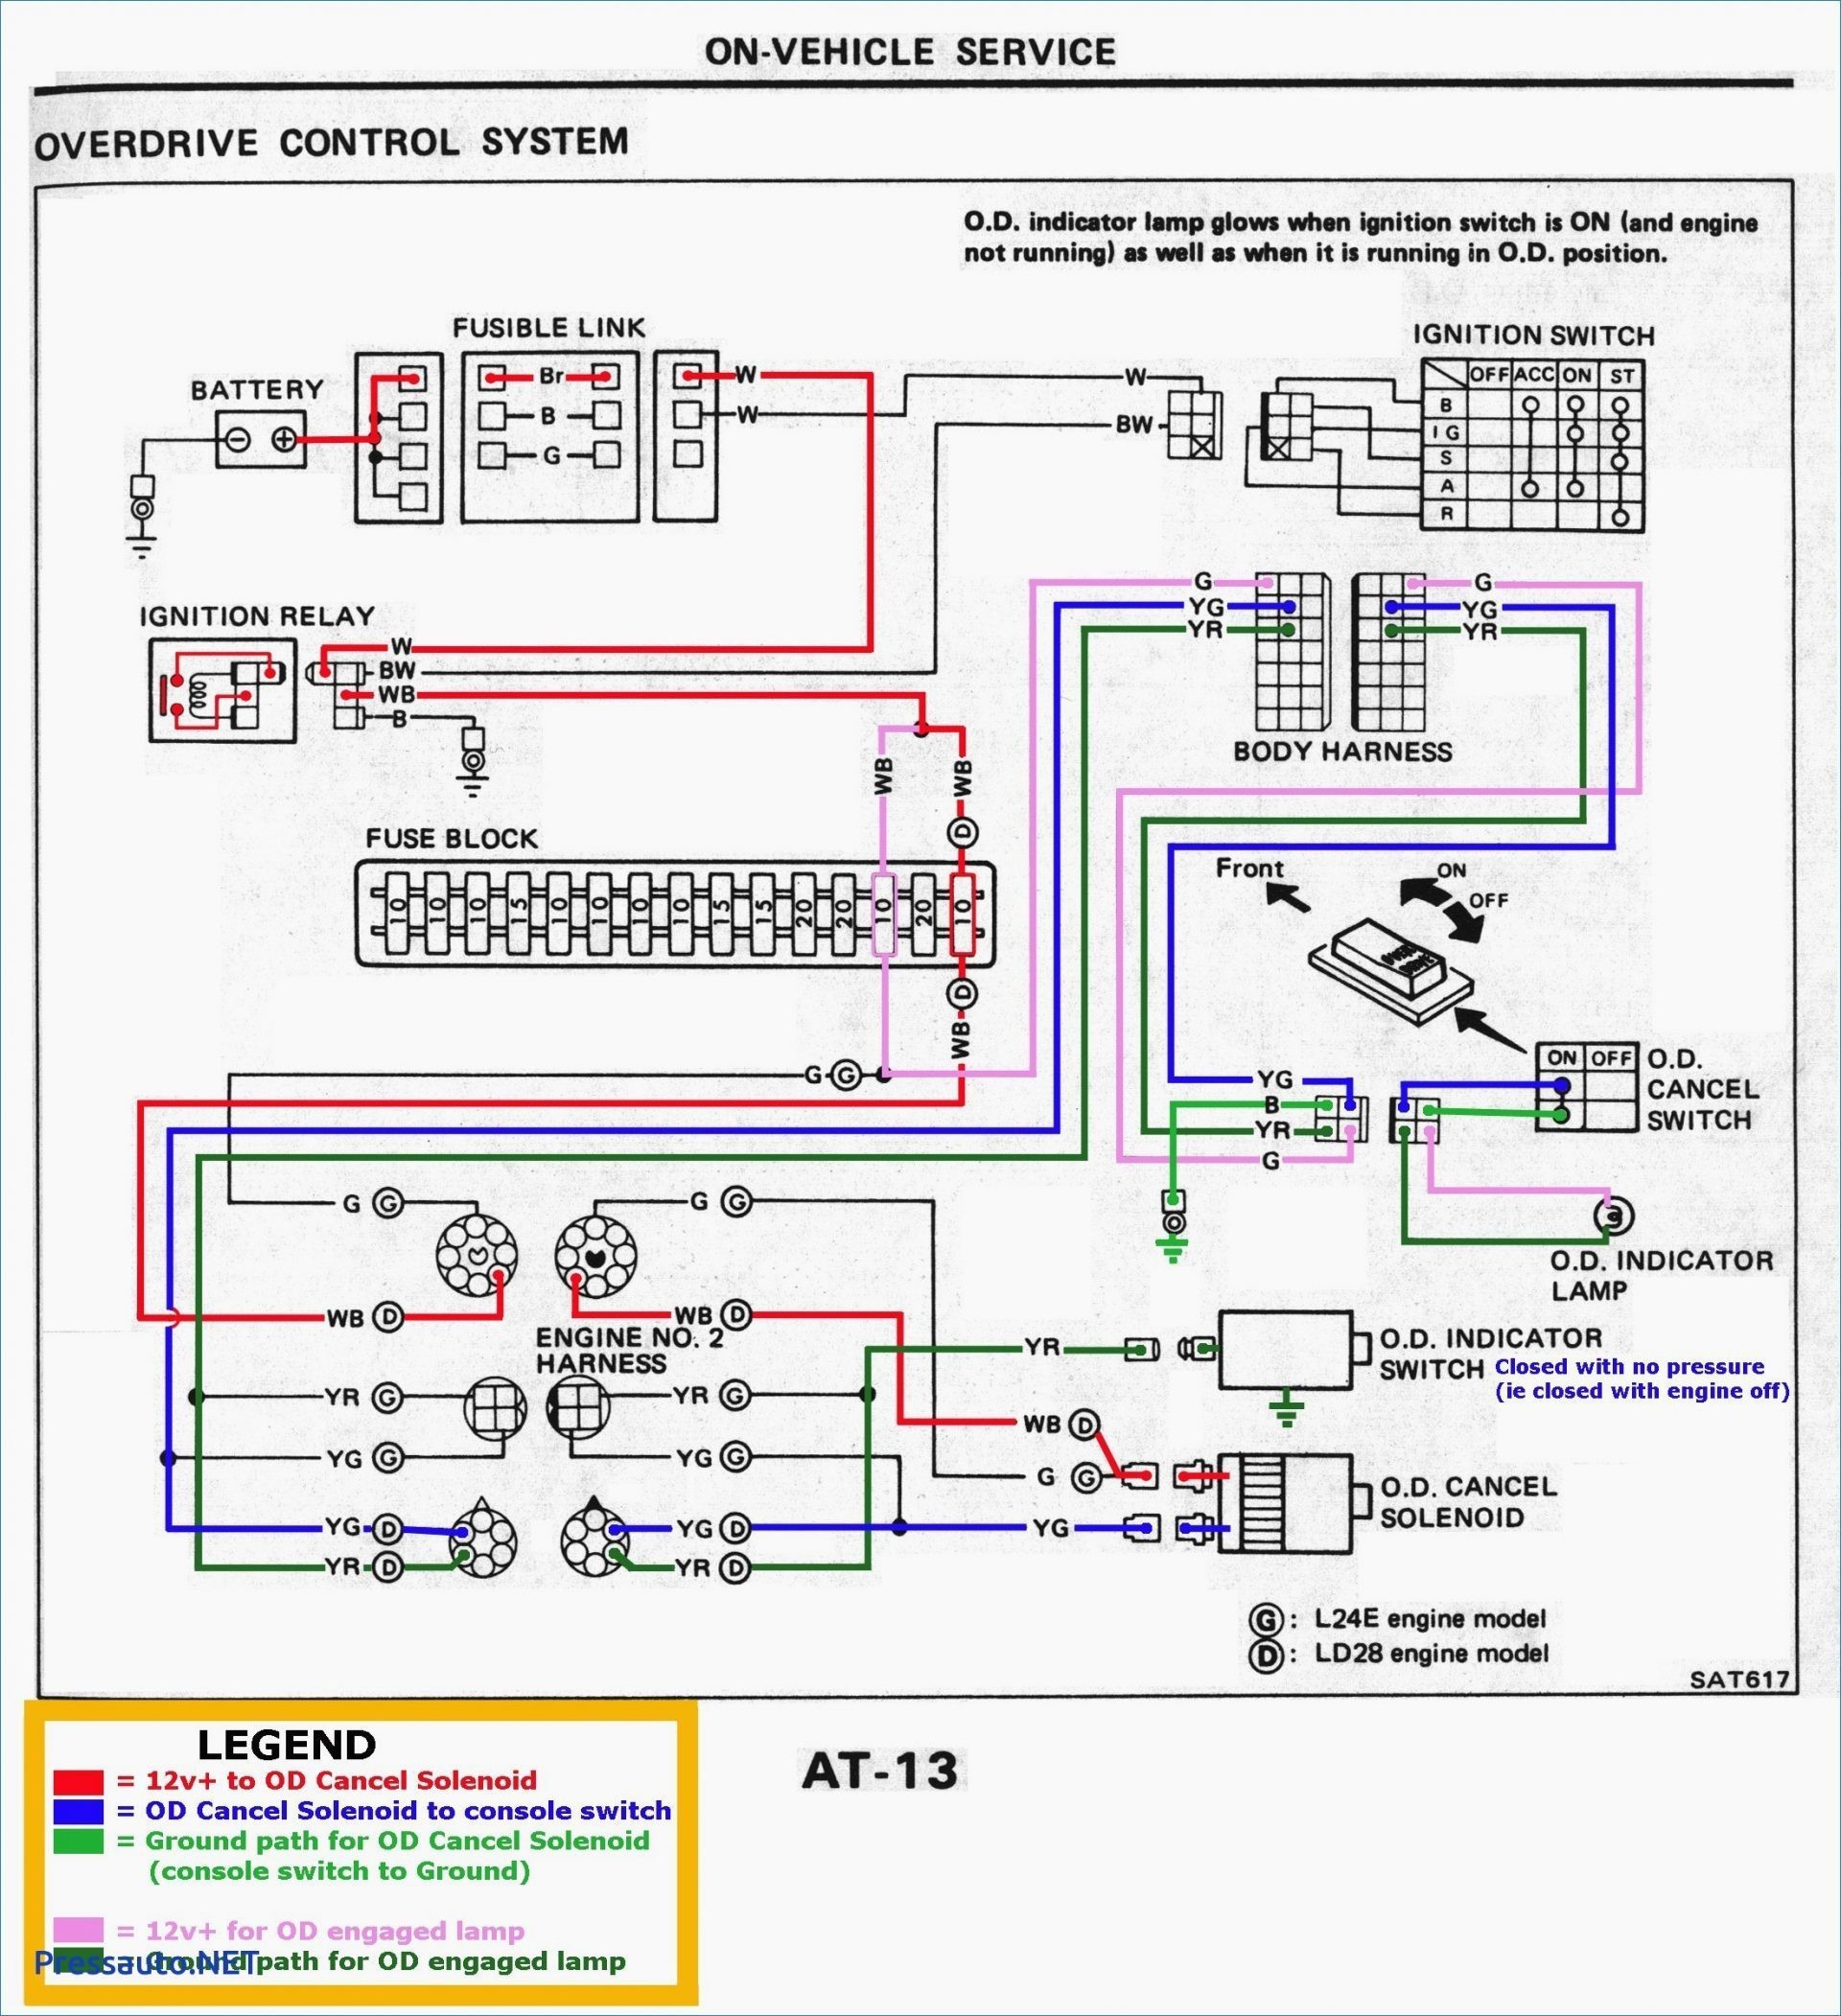 2000 Dodge Neon Engine Diagram 2001 Caravan Wiring Diagram Ignition Data Schematics Wiring Diagram • Of 2000 Dodge Neon Engine Diagram